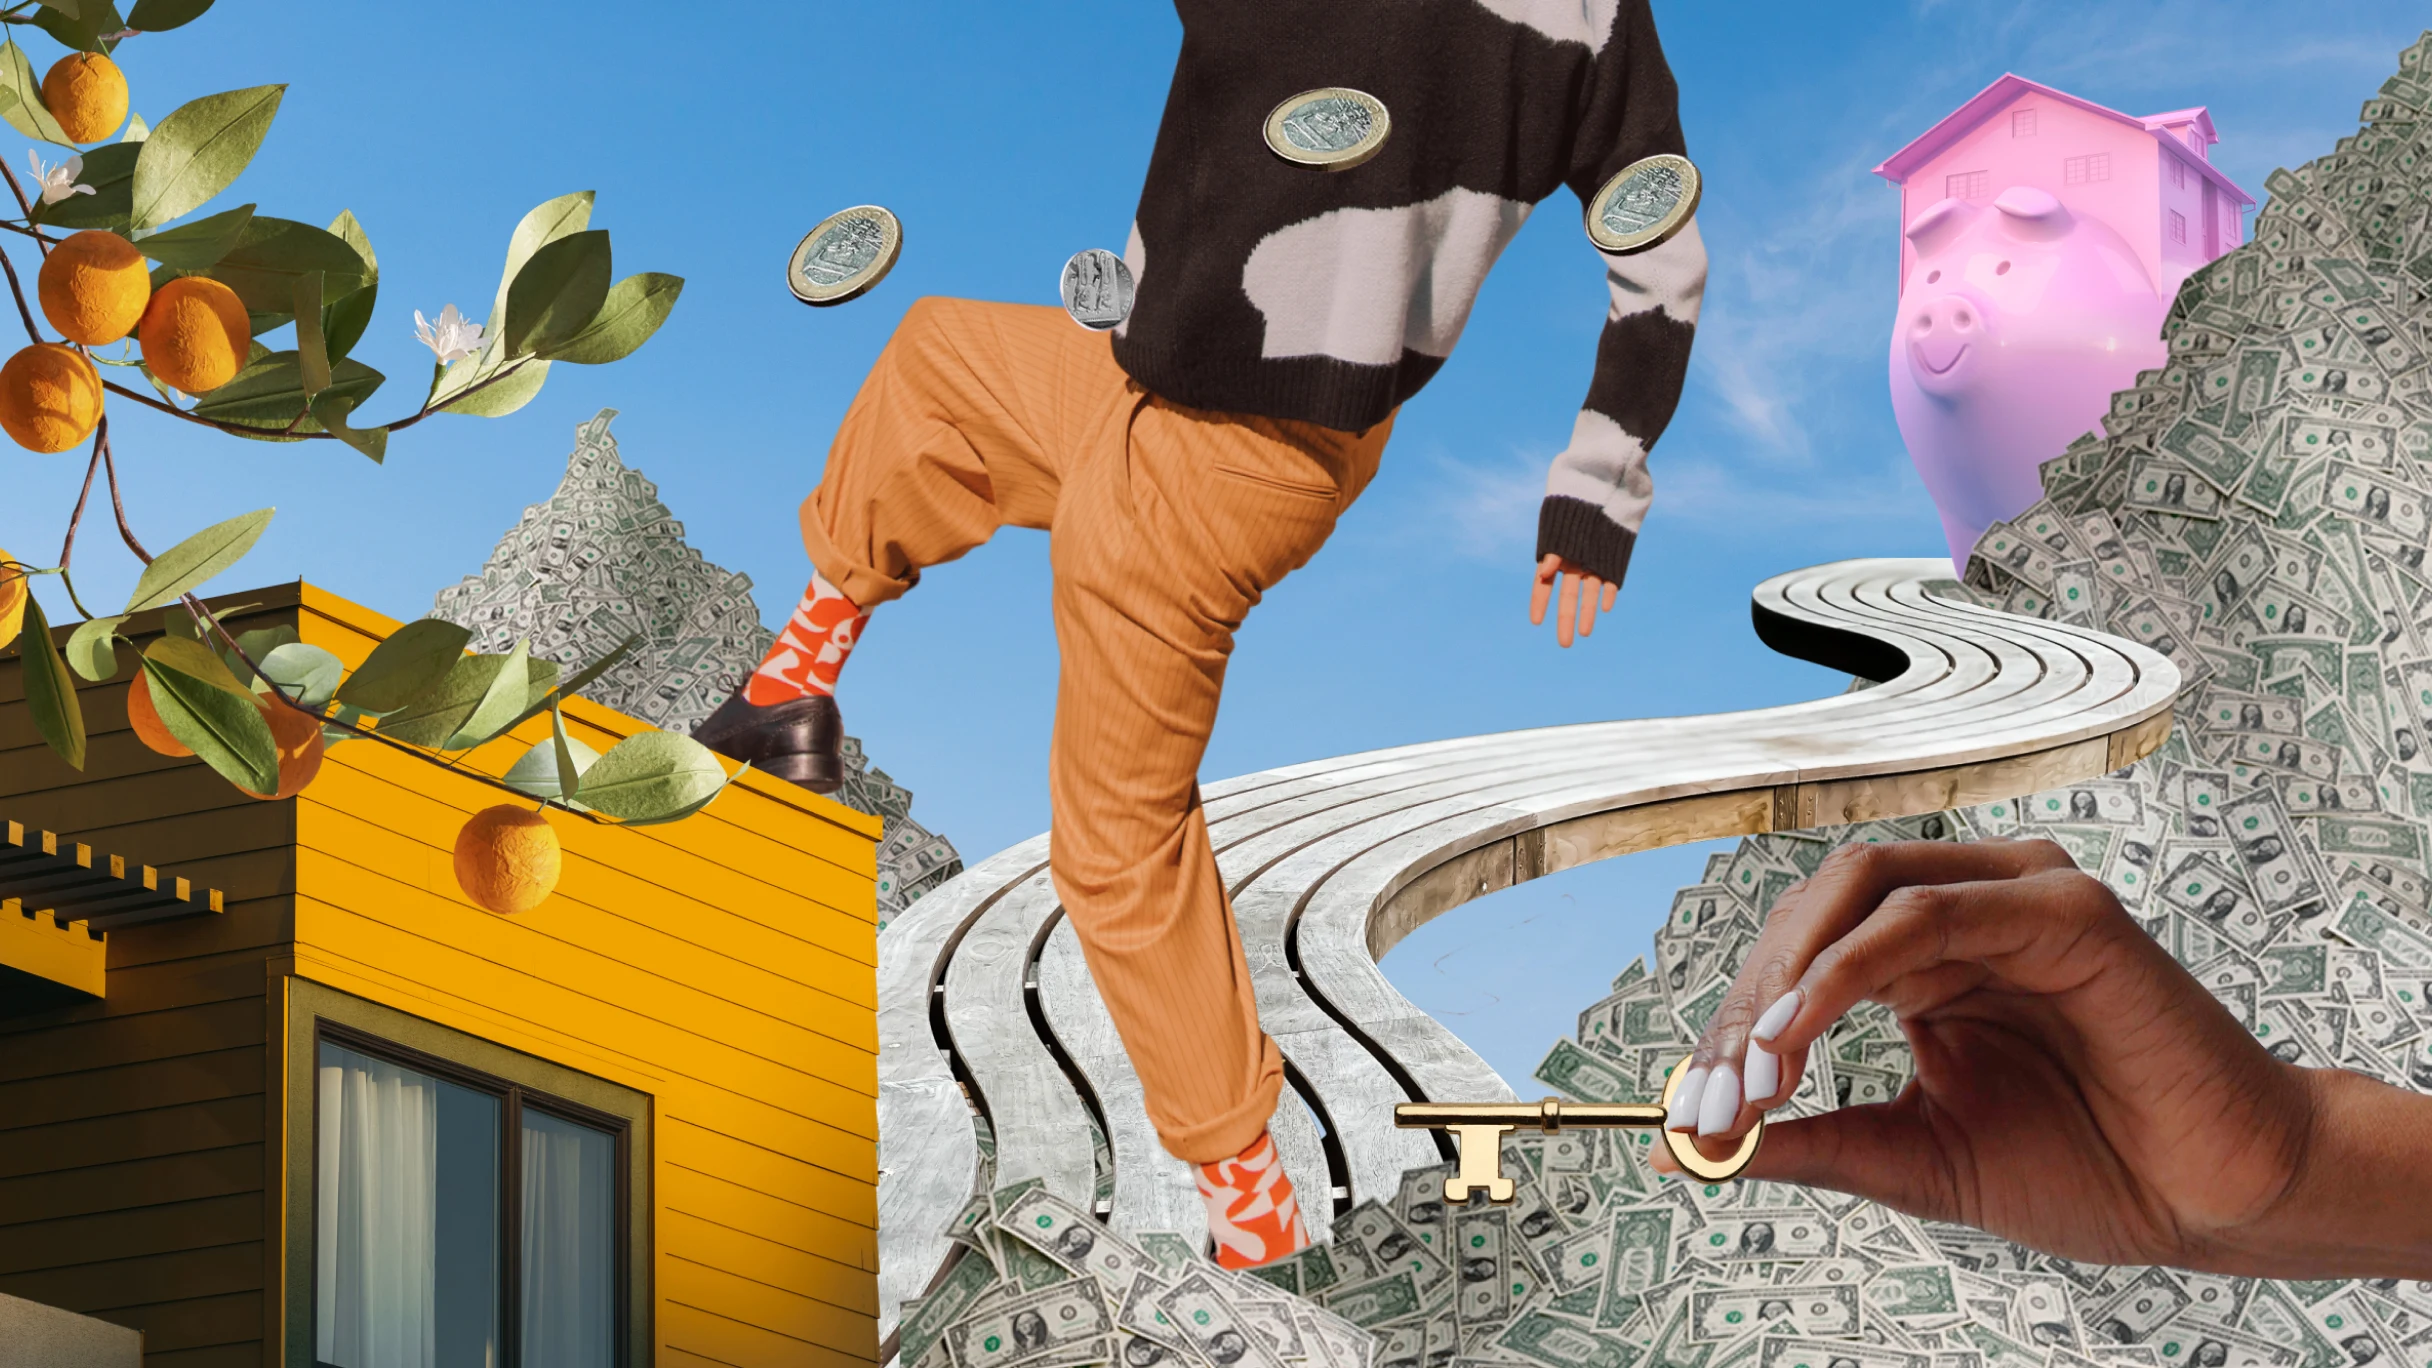 Collage fantaisiste d'un arbre orange, piles de dollars américains, passerelle jusqu'à une tirelire, pièces d'euros flottantes, un homme posant son pied sur une maison et mains tenant une clé.